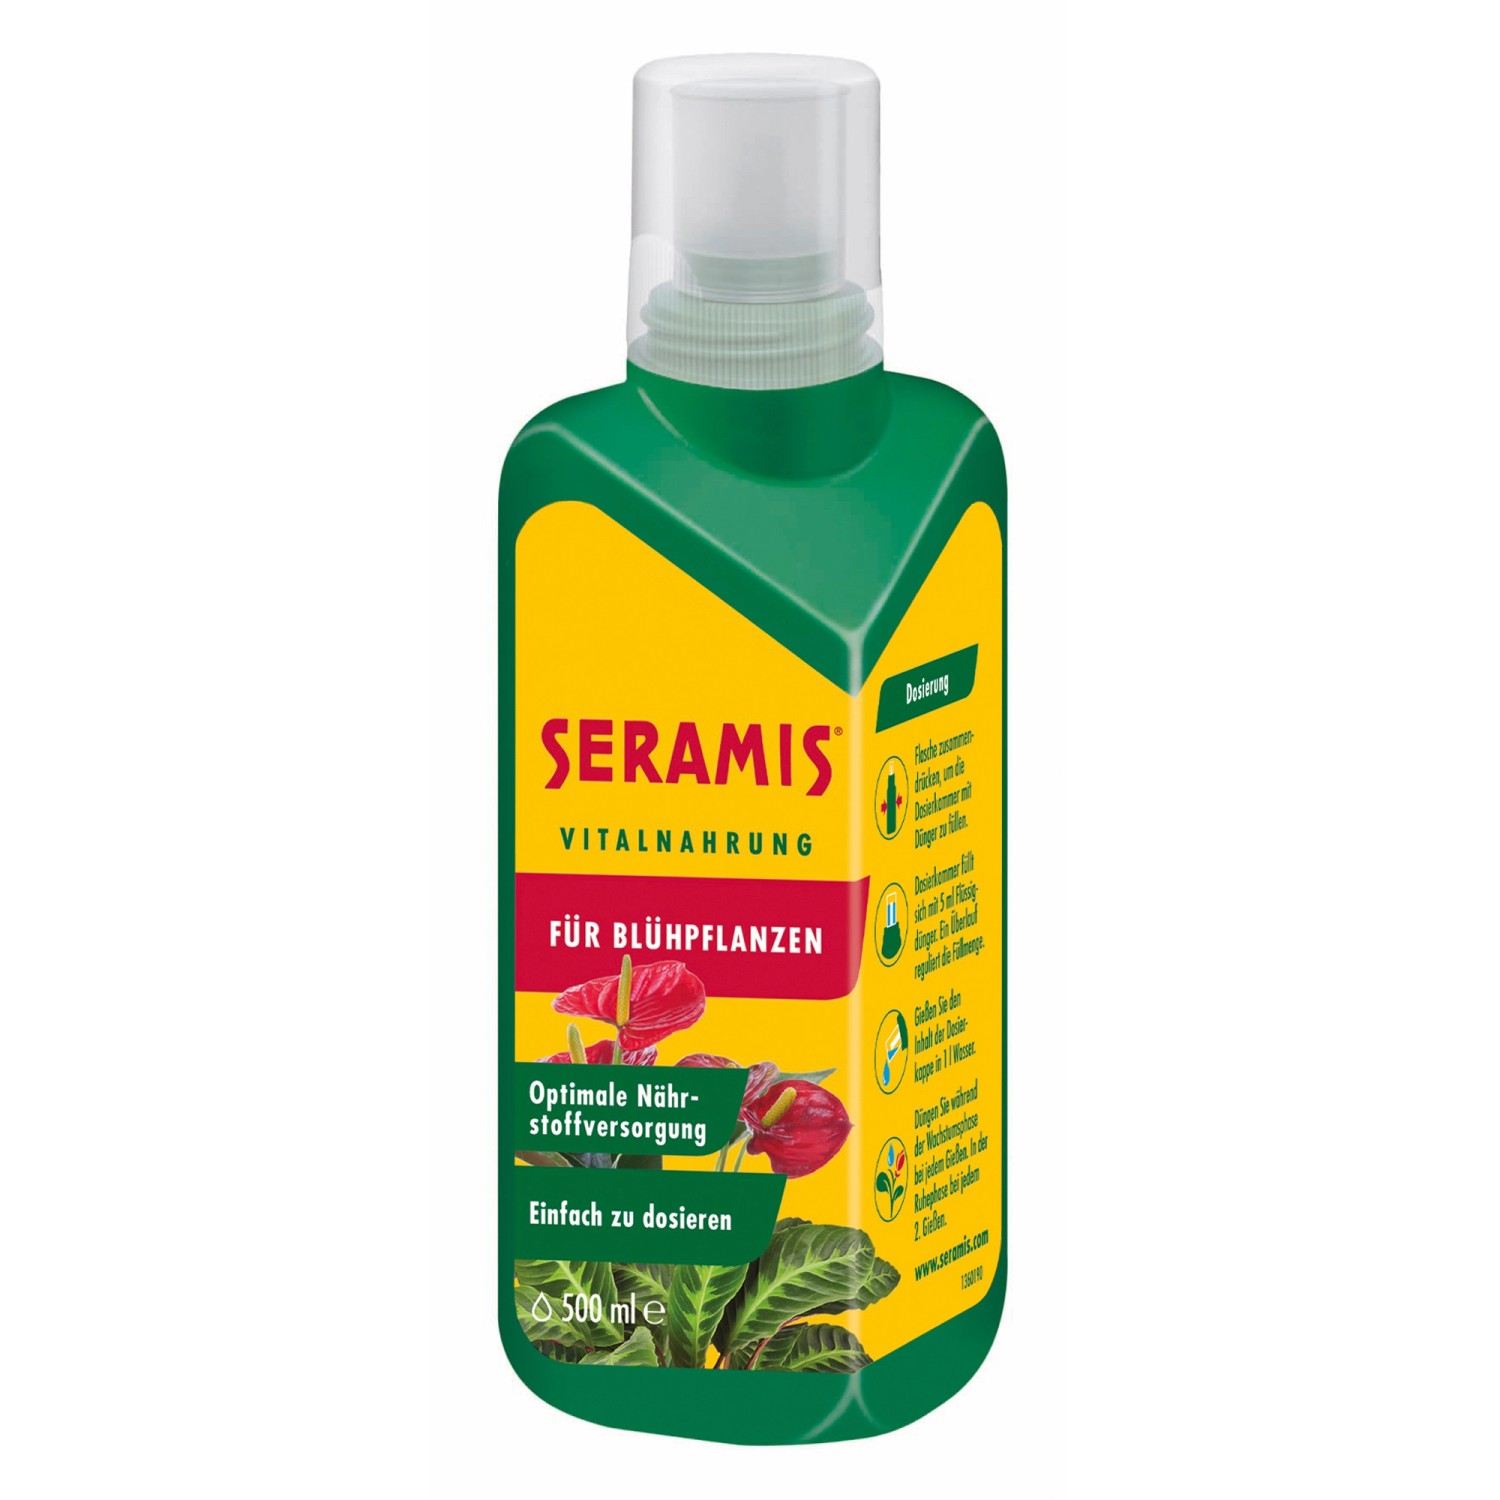 Seramis Vitalnahrung für Blühpflanzen 500 ml